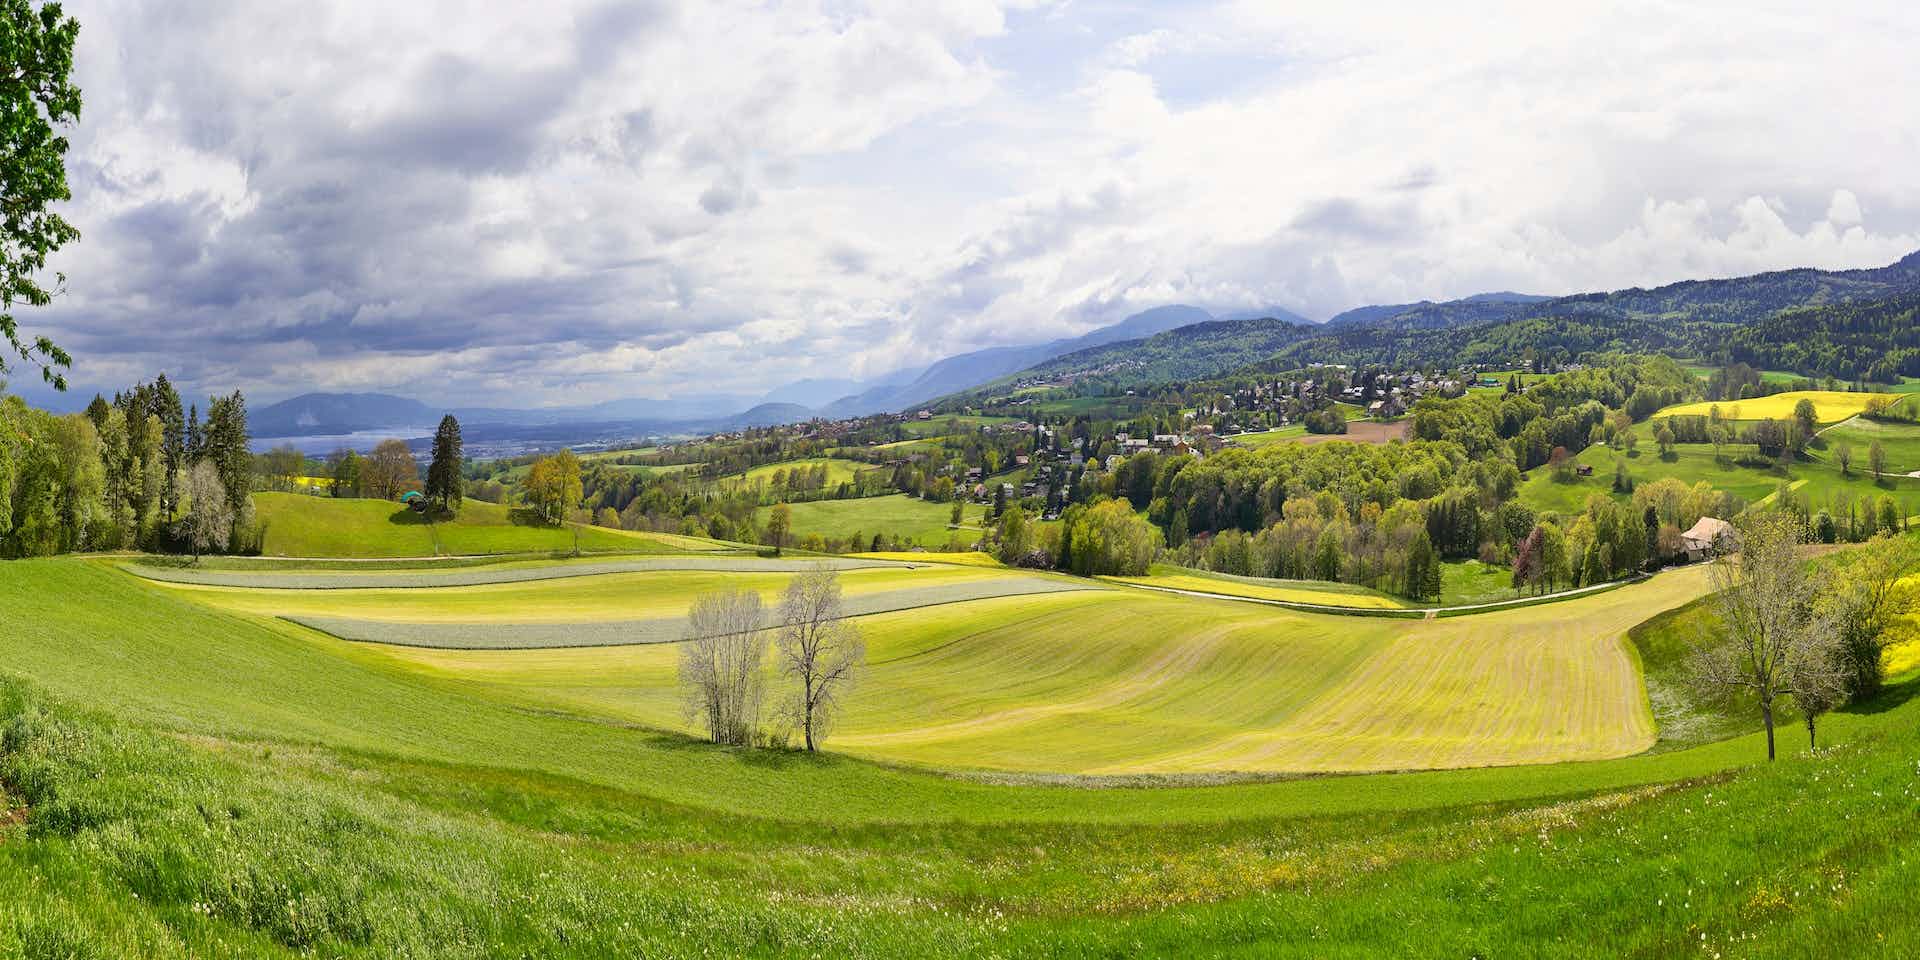 Terres de Lavaux, producer in Lutry canton of Vaud in Switzerland